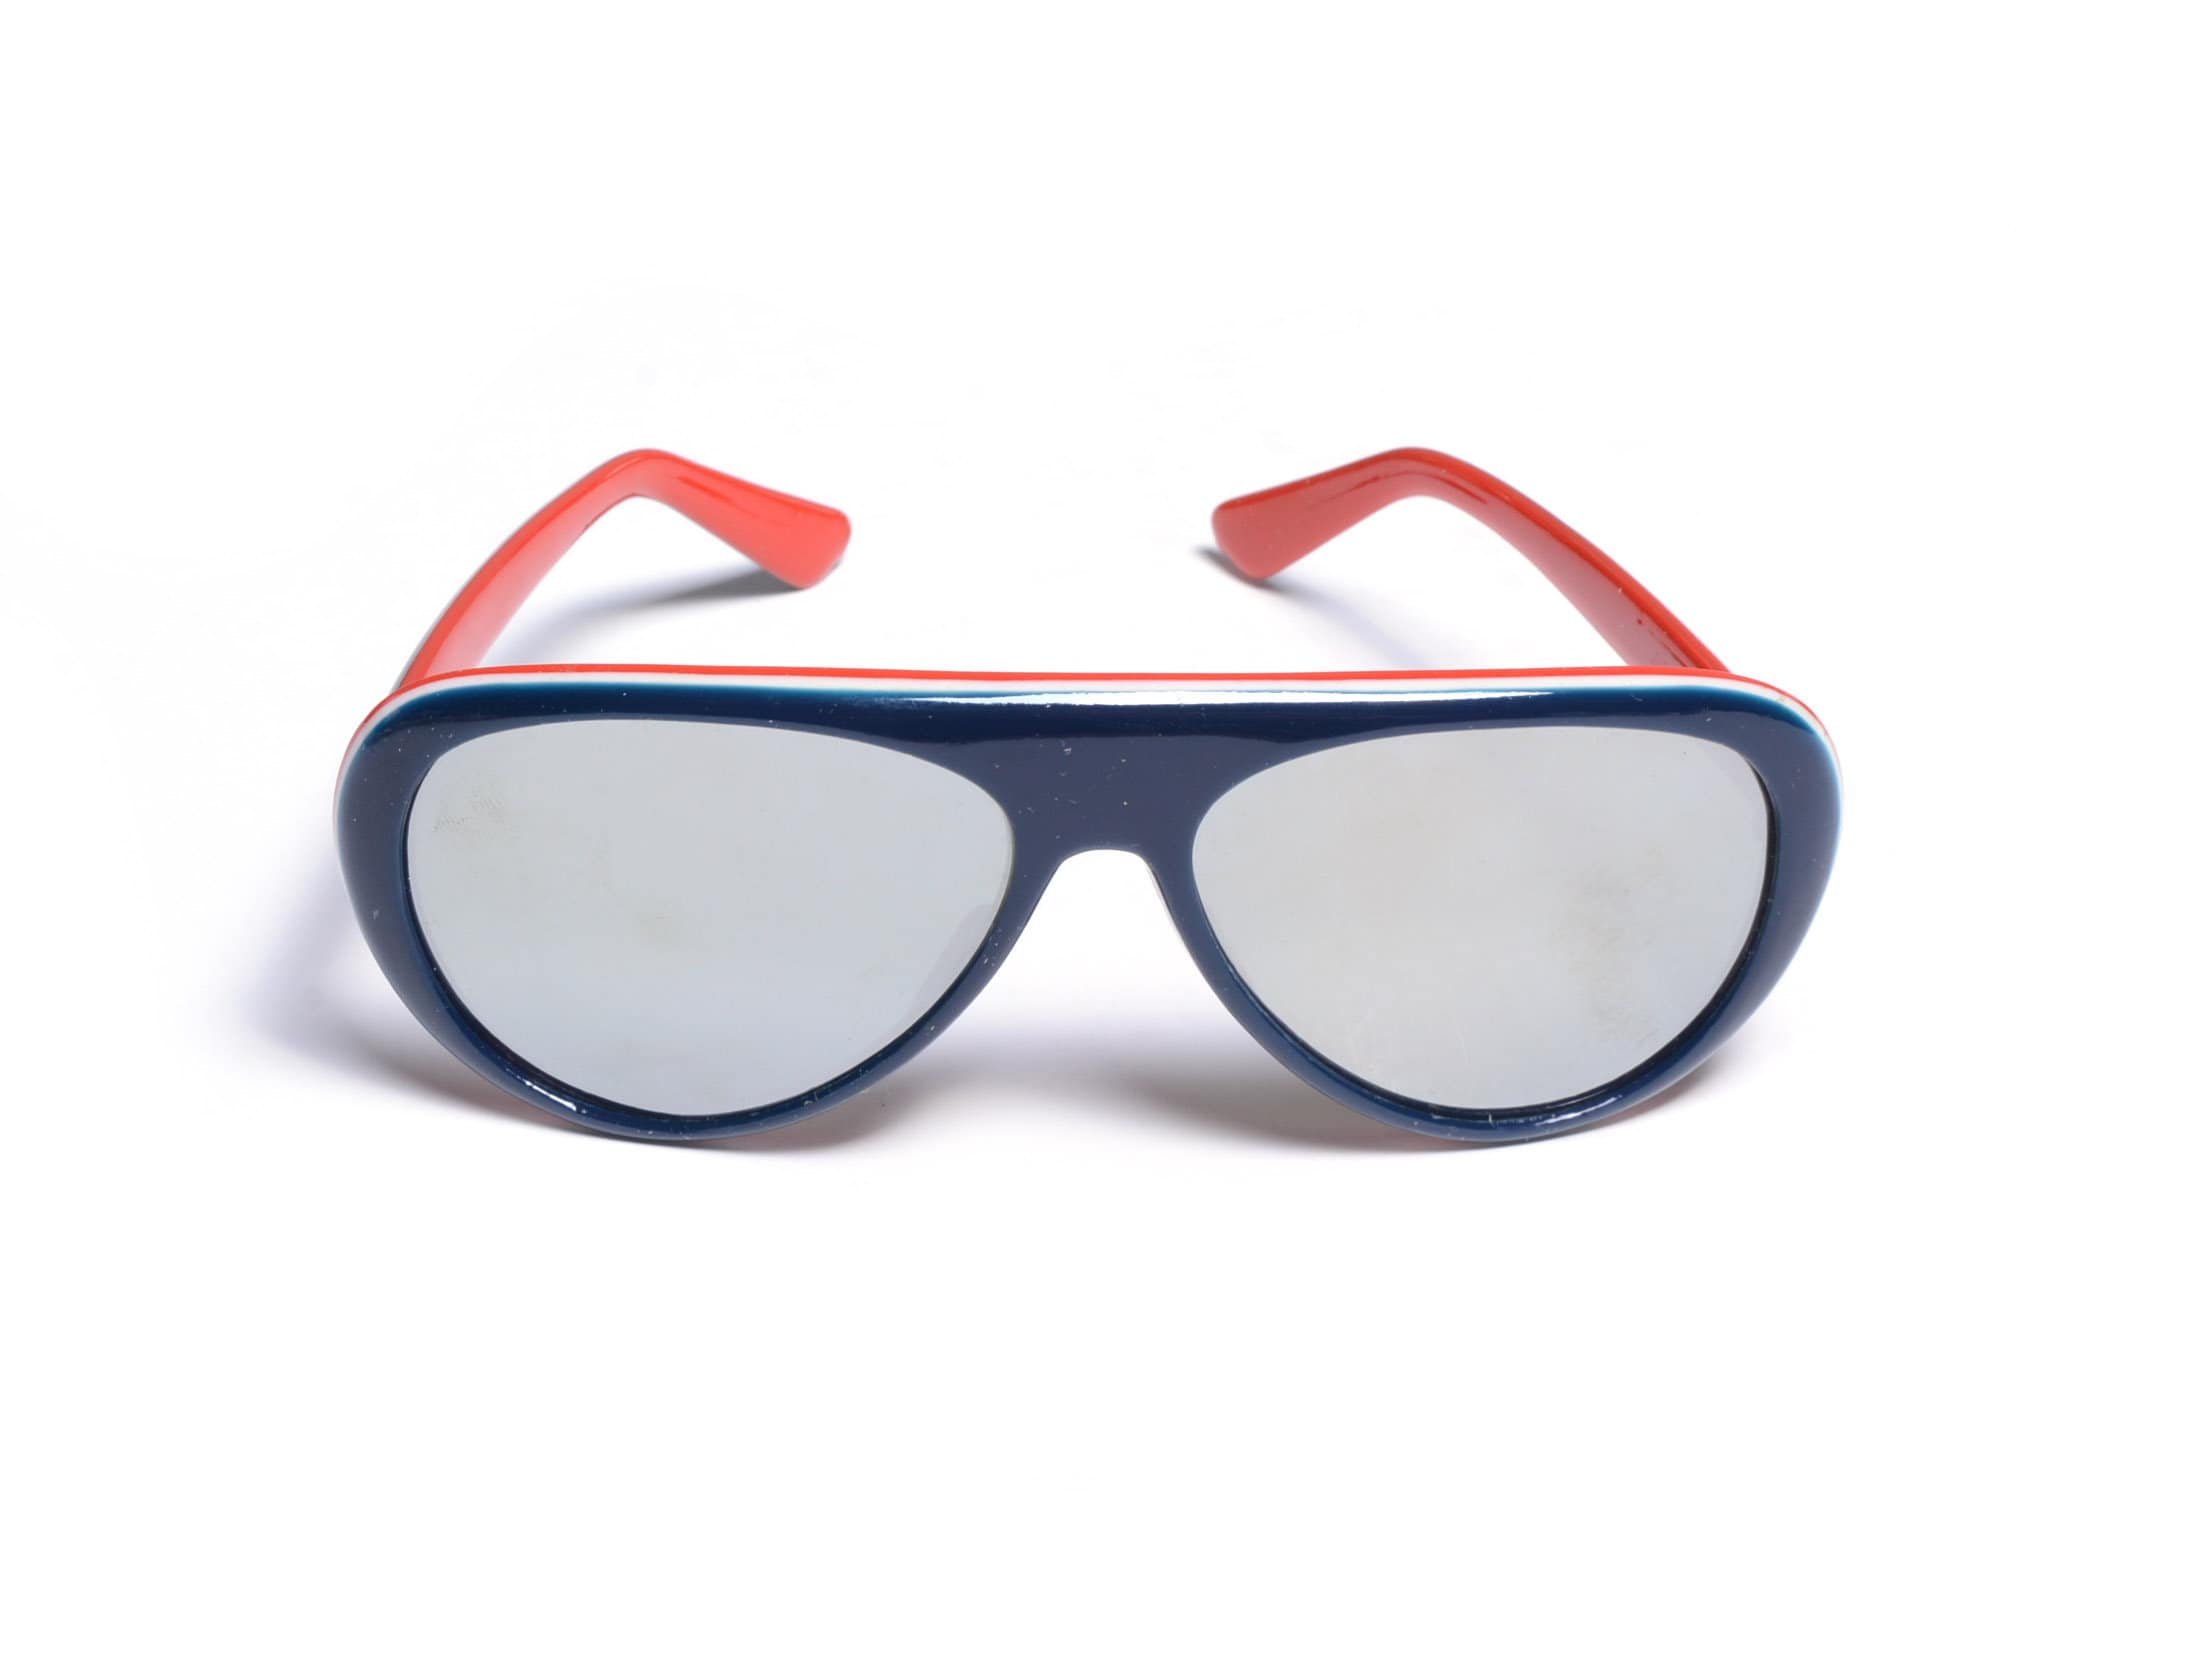 vintage années 70 ski lunettes de soleil rouge blanc bleu plastique cadre  1970 oversize aviateur miroir rétro ski alpinisme Martin Sno deadstock NOS